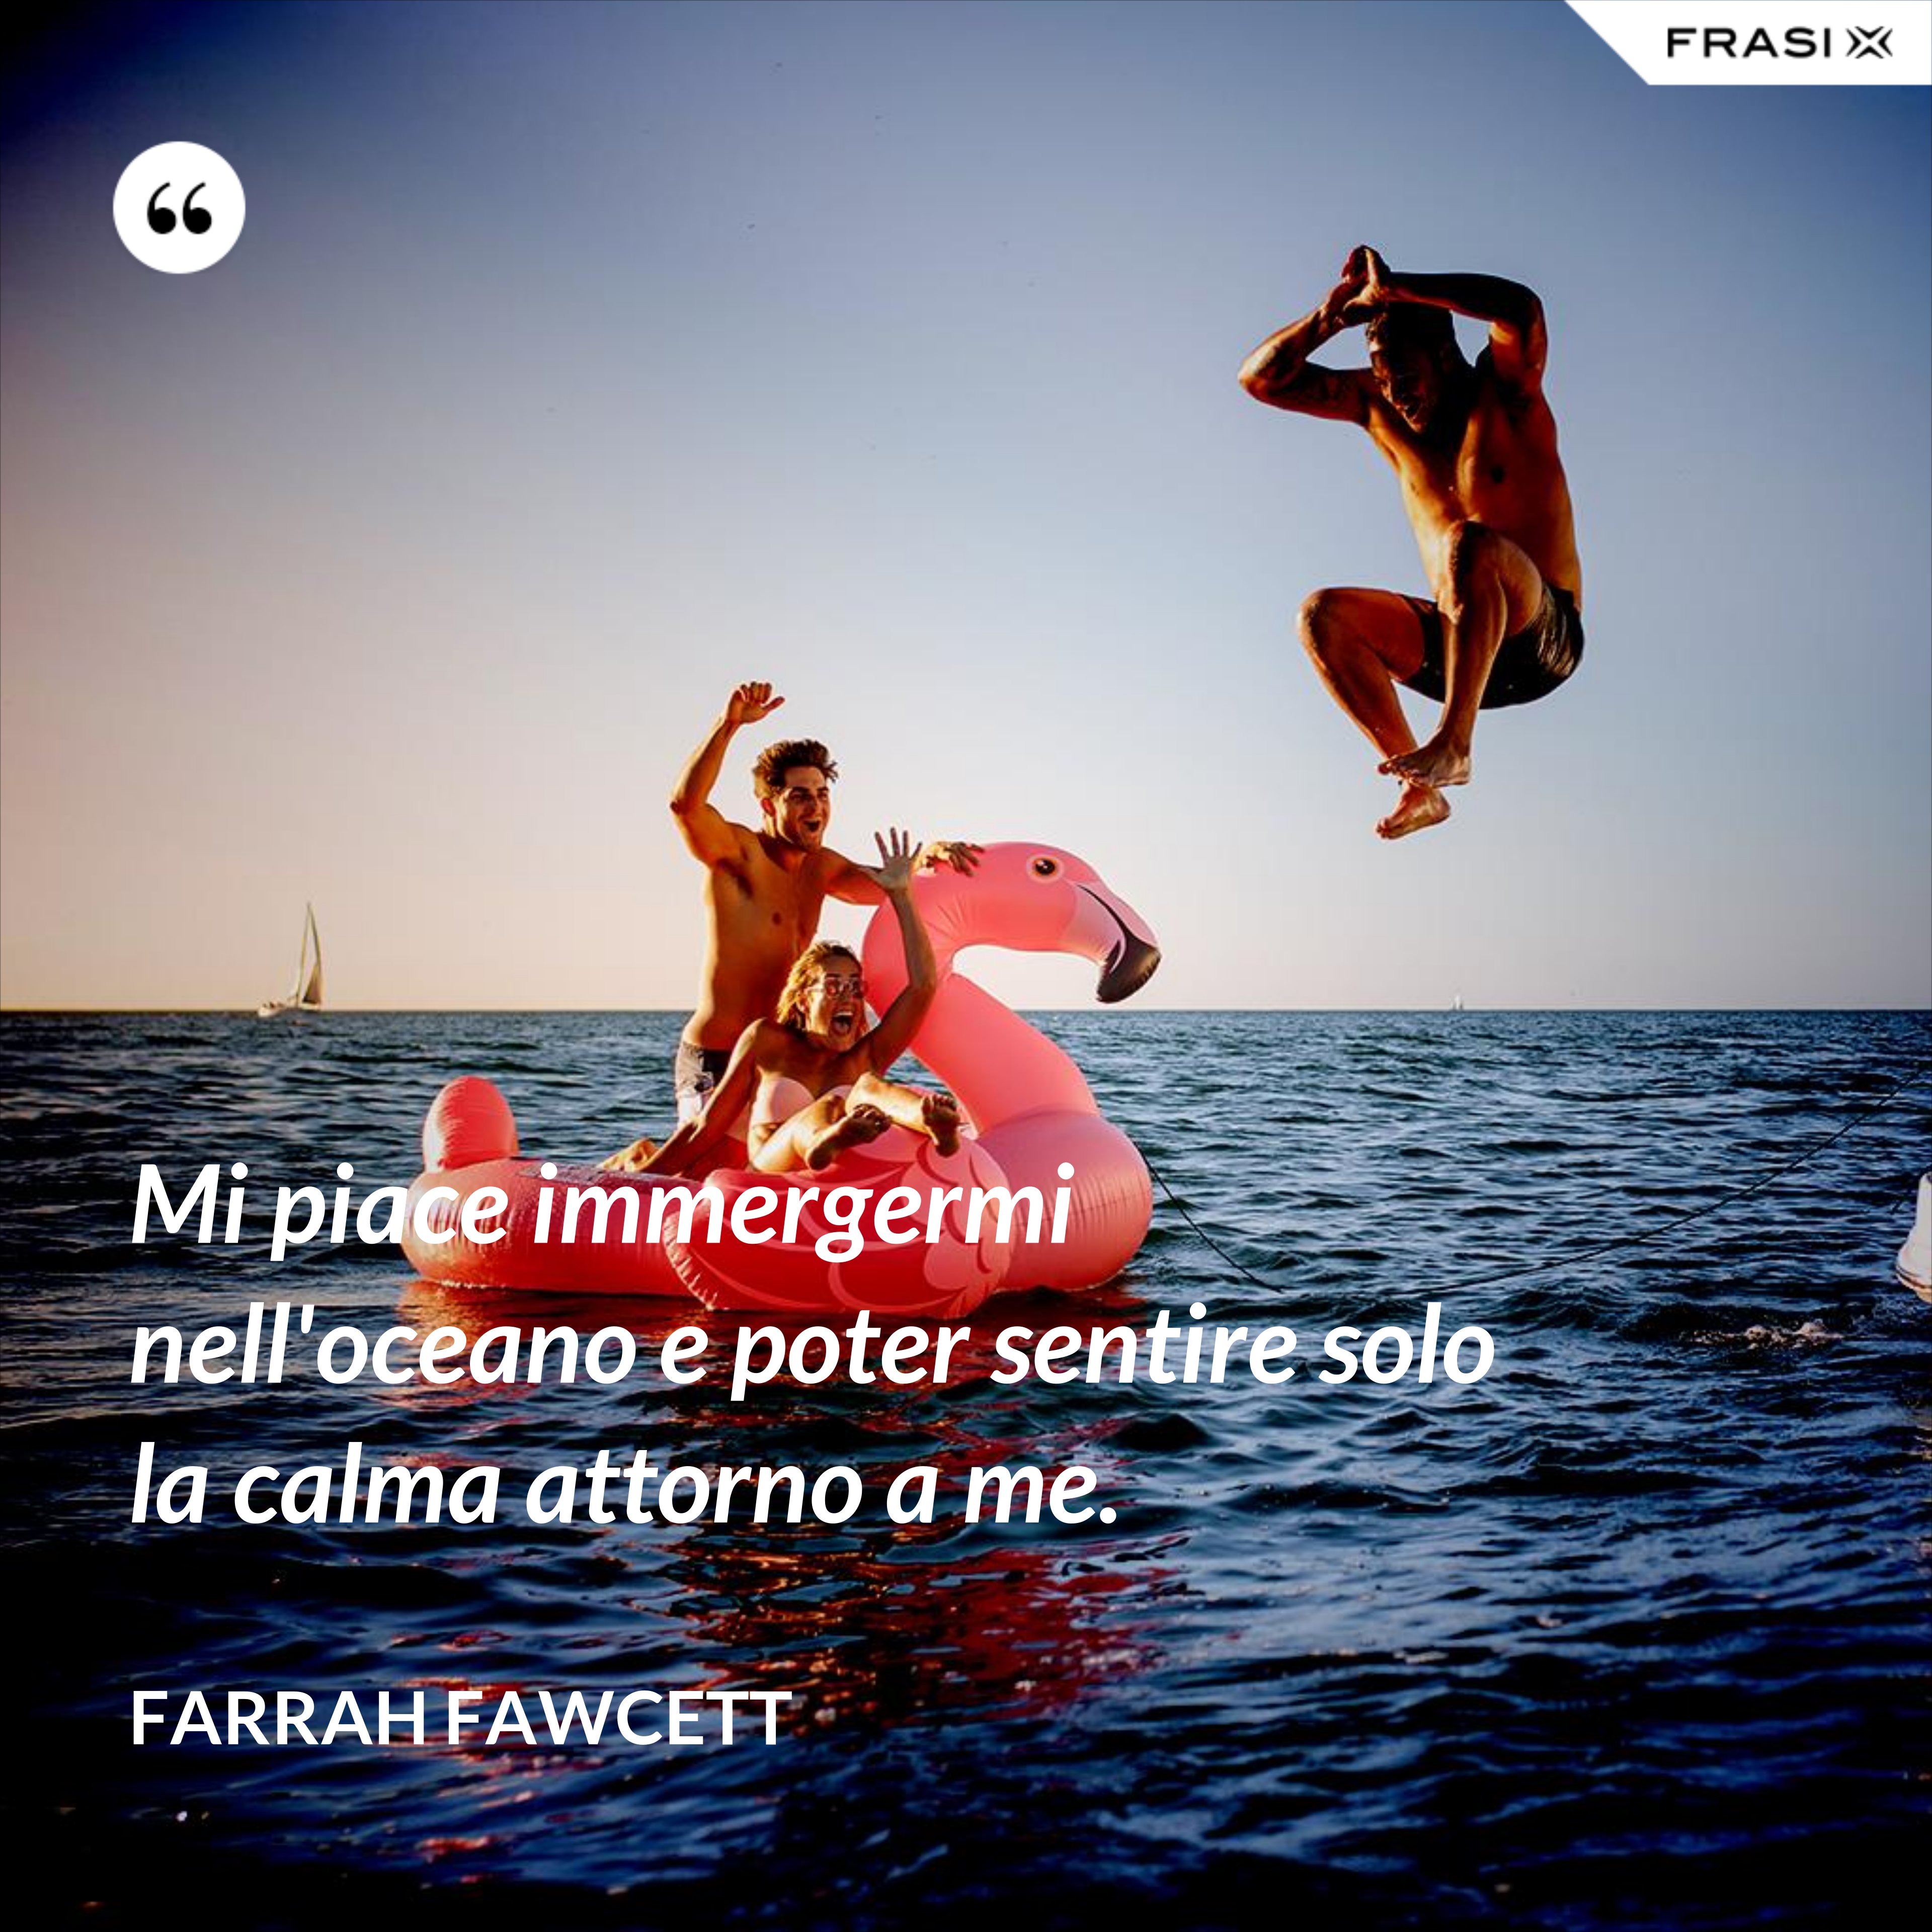 Mi piace immergermi nell'oceano e poter sentire solo la calma attorno a me. - Farrah Fawcett